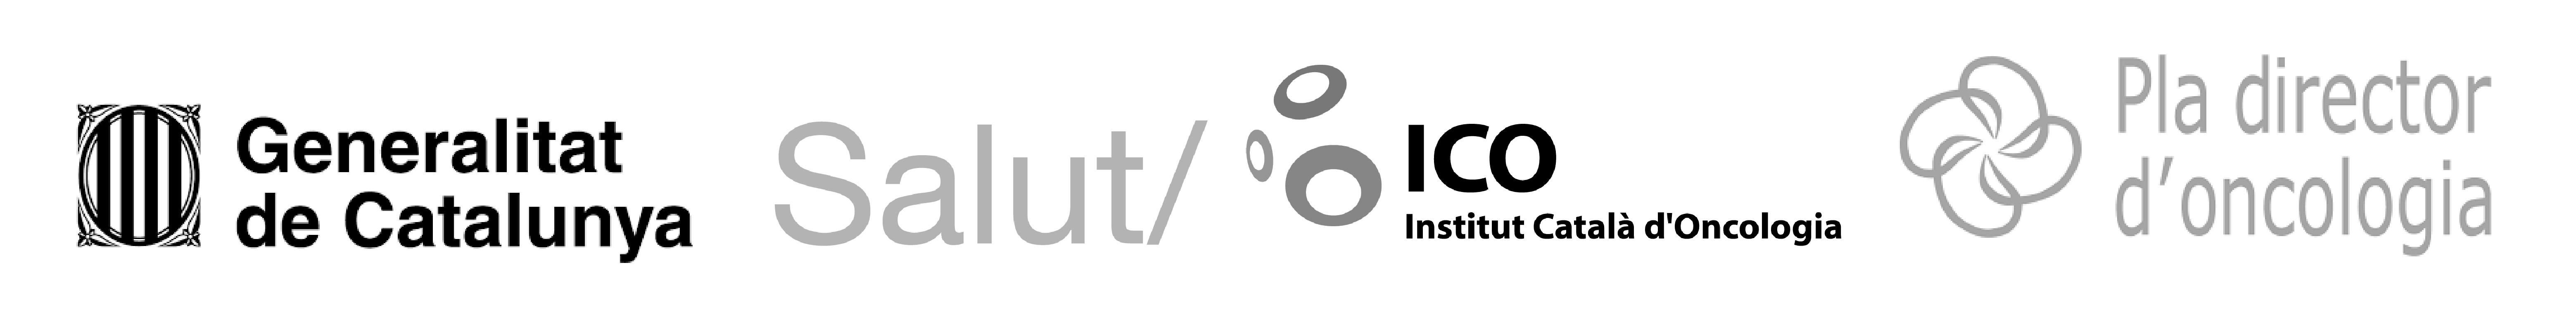 Logo_ICO_PlaDirectorOncologia